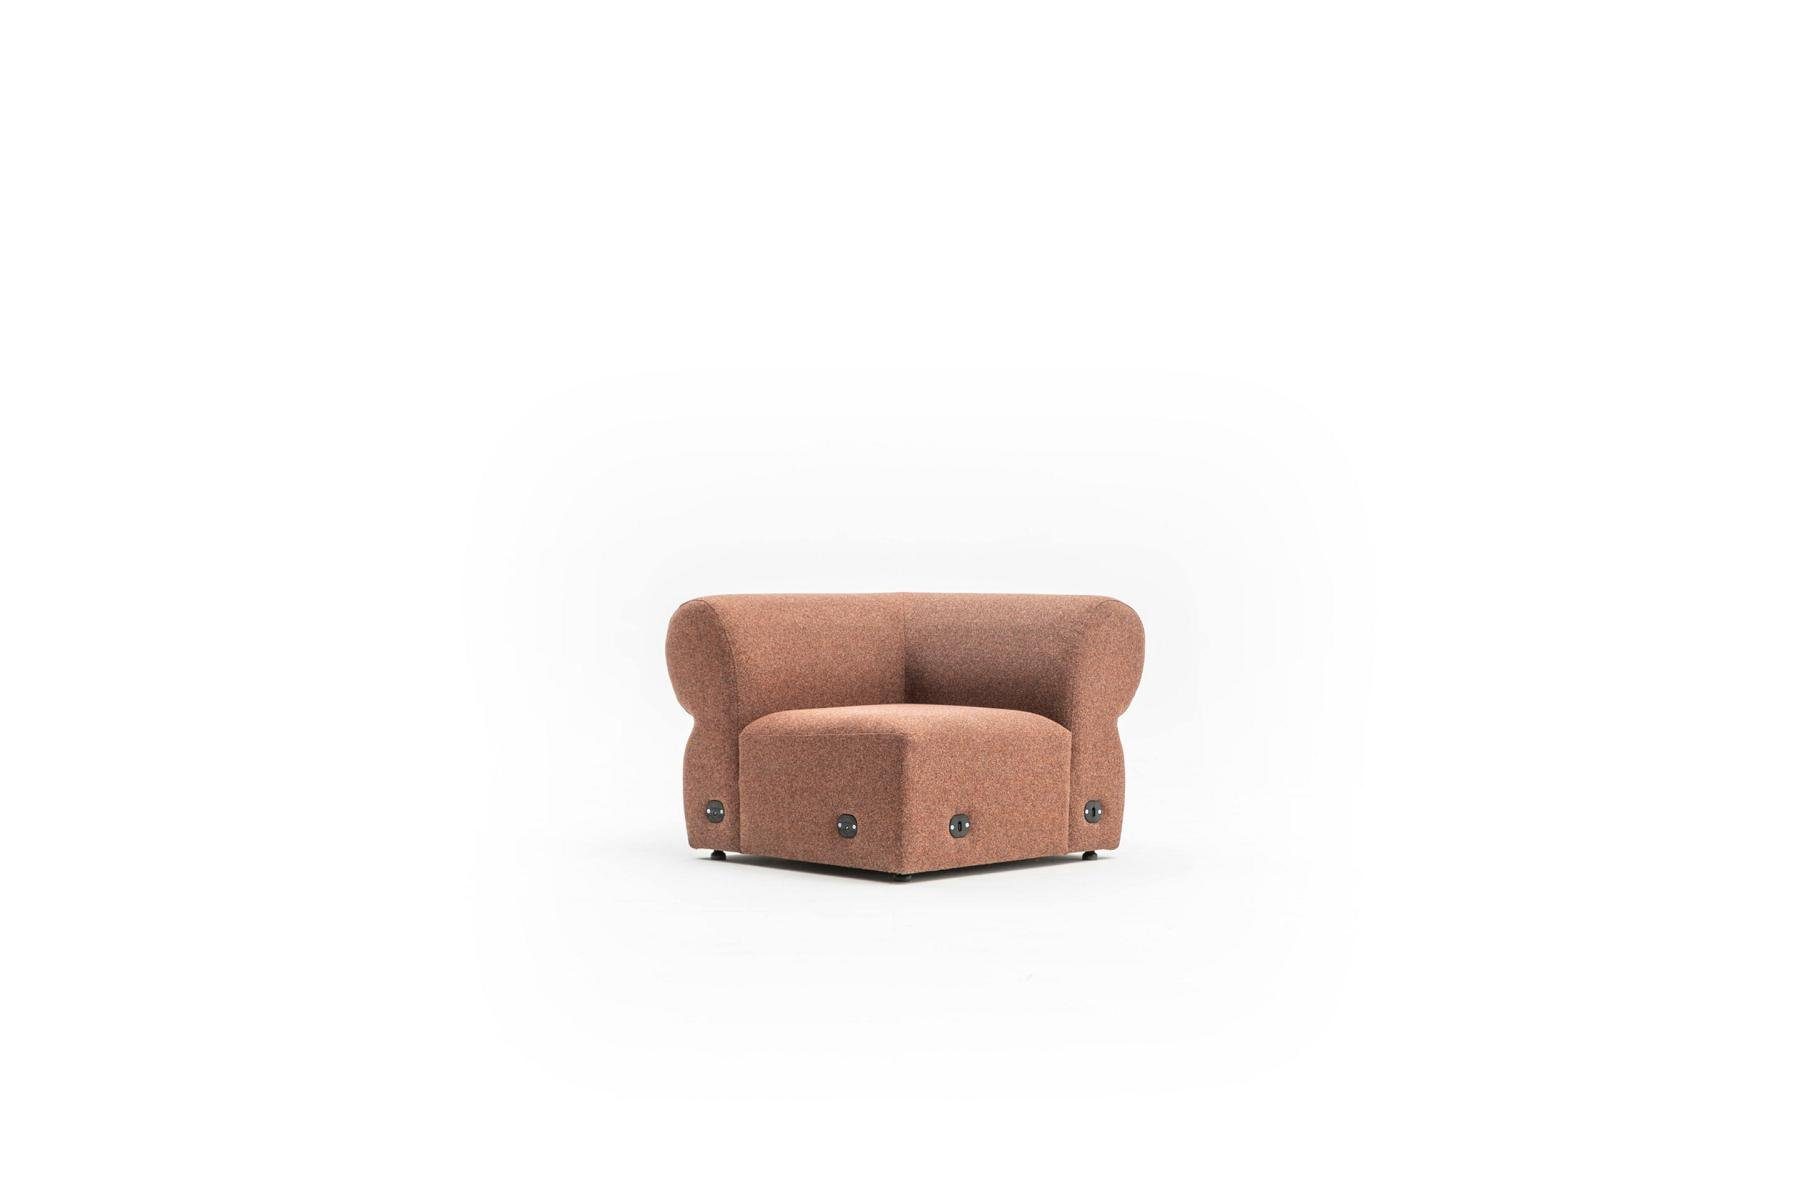 Made in Dreisitzer Luxus Modernes Polster Design 2 3-Sitzer Teile, Couch, JVmoebel Sofa Europe Brauner